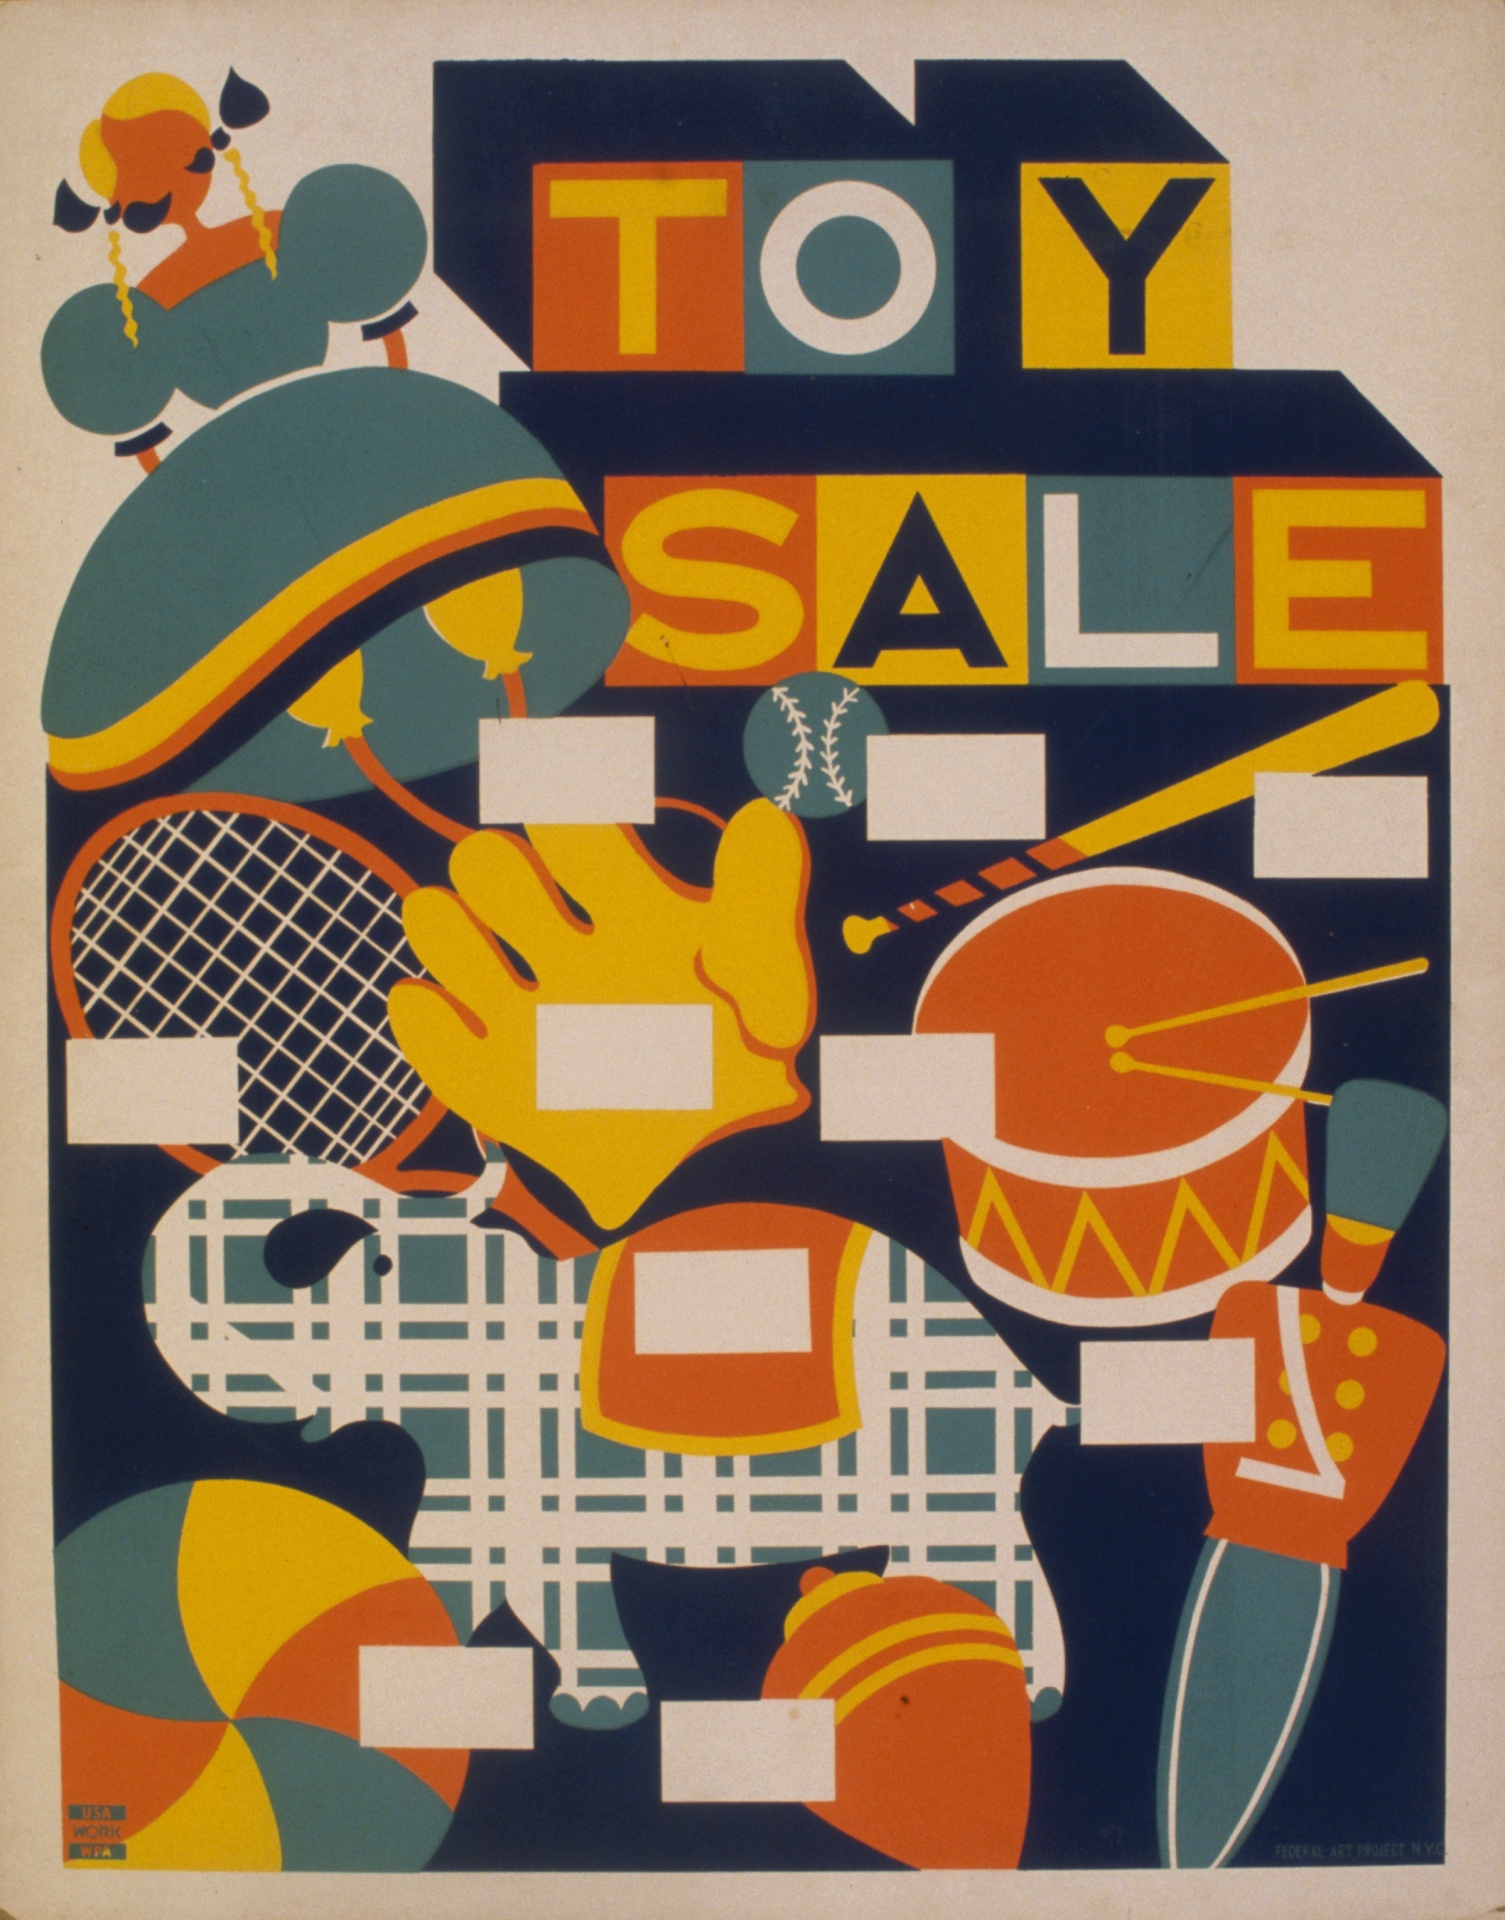 ヴィンテージ玩具販売のポスター